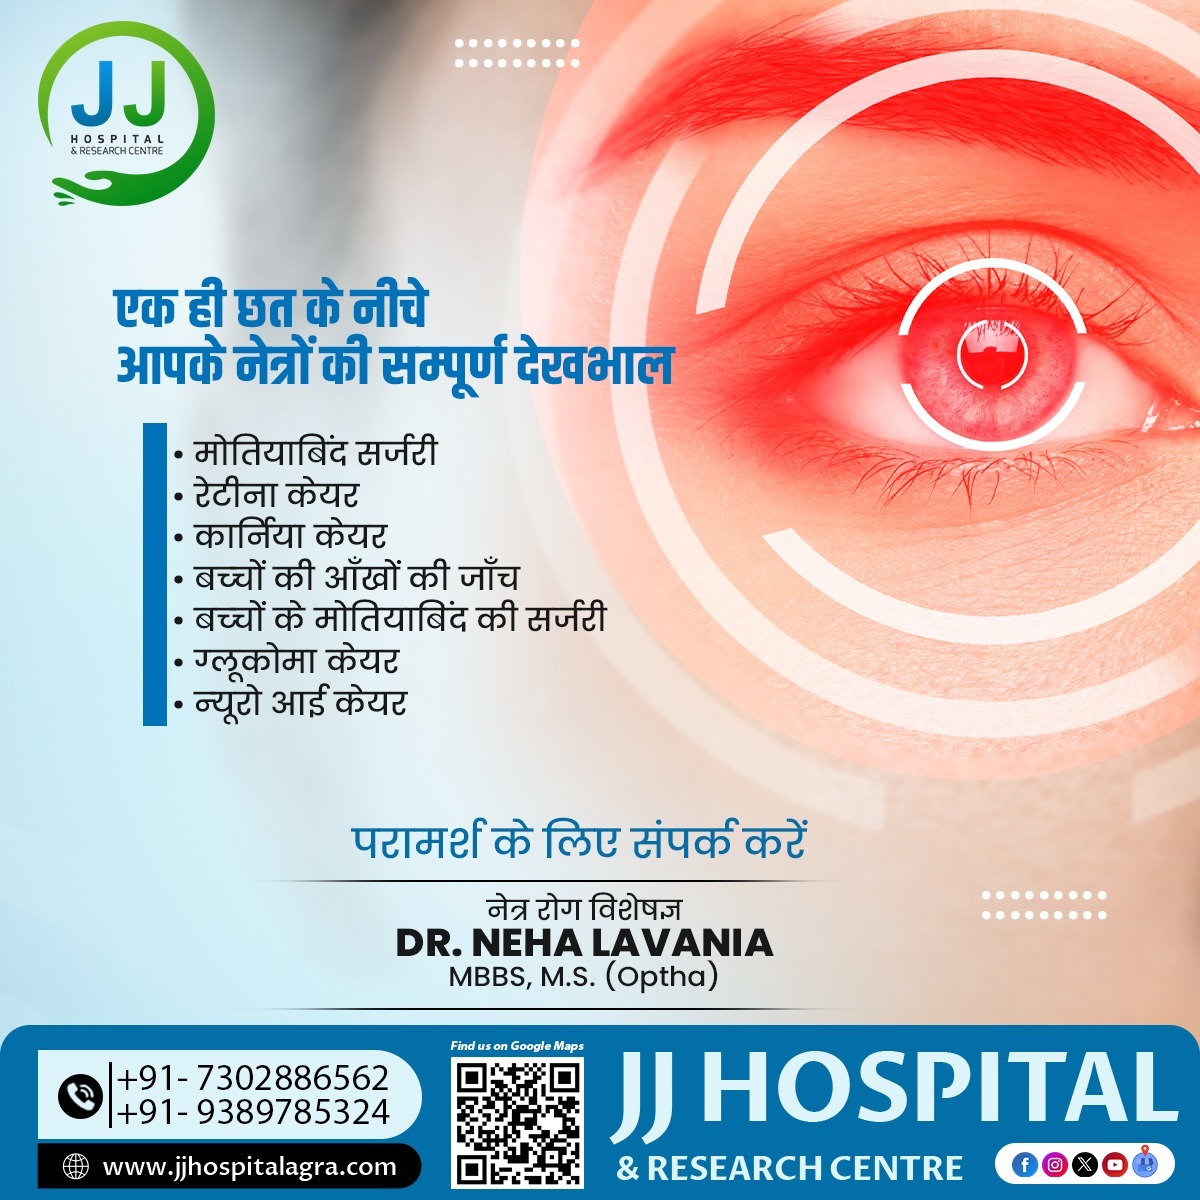 एक ही छत के नीचे आपके नेत्रों की सम्पूर्ण देखभाल 

परामर्श के लिए संपर्क करें : 9389785324, 7302886562  

नेत्र रोग विशेषज्ञ
Dr. Neha Lavania
MBBS, M.S. (Optha) 

#DrNehaLavania #JJHospital #Agra #ResearchCentre #UttarPradesh